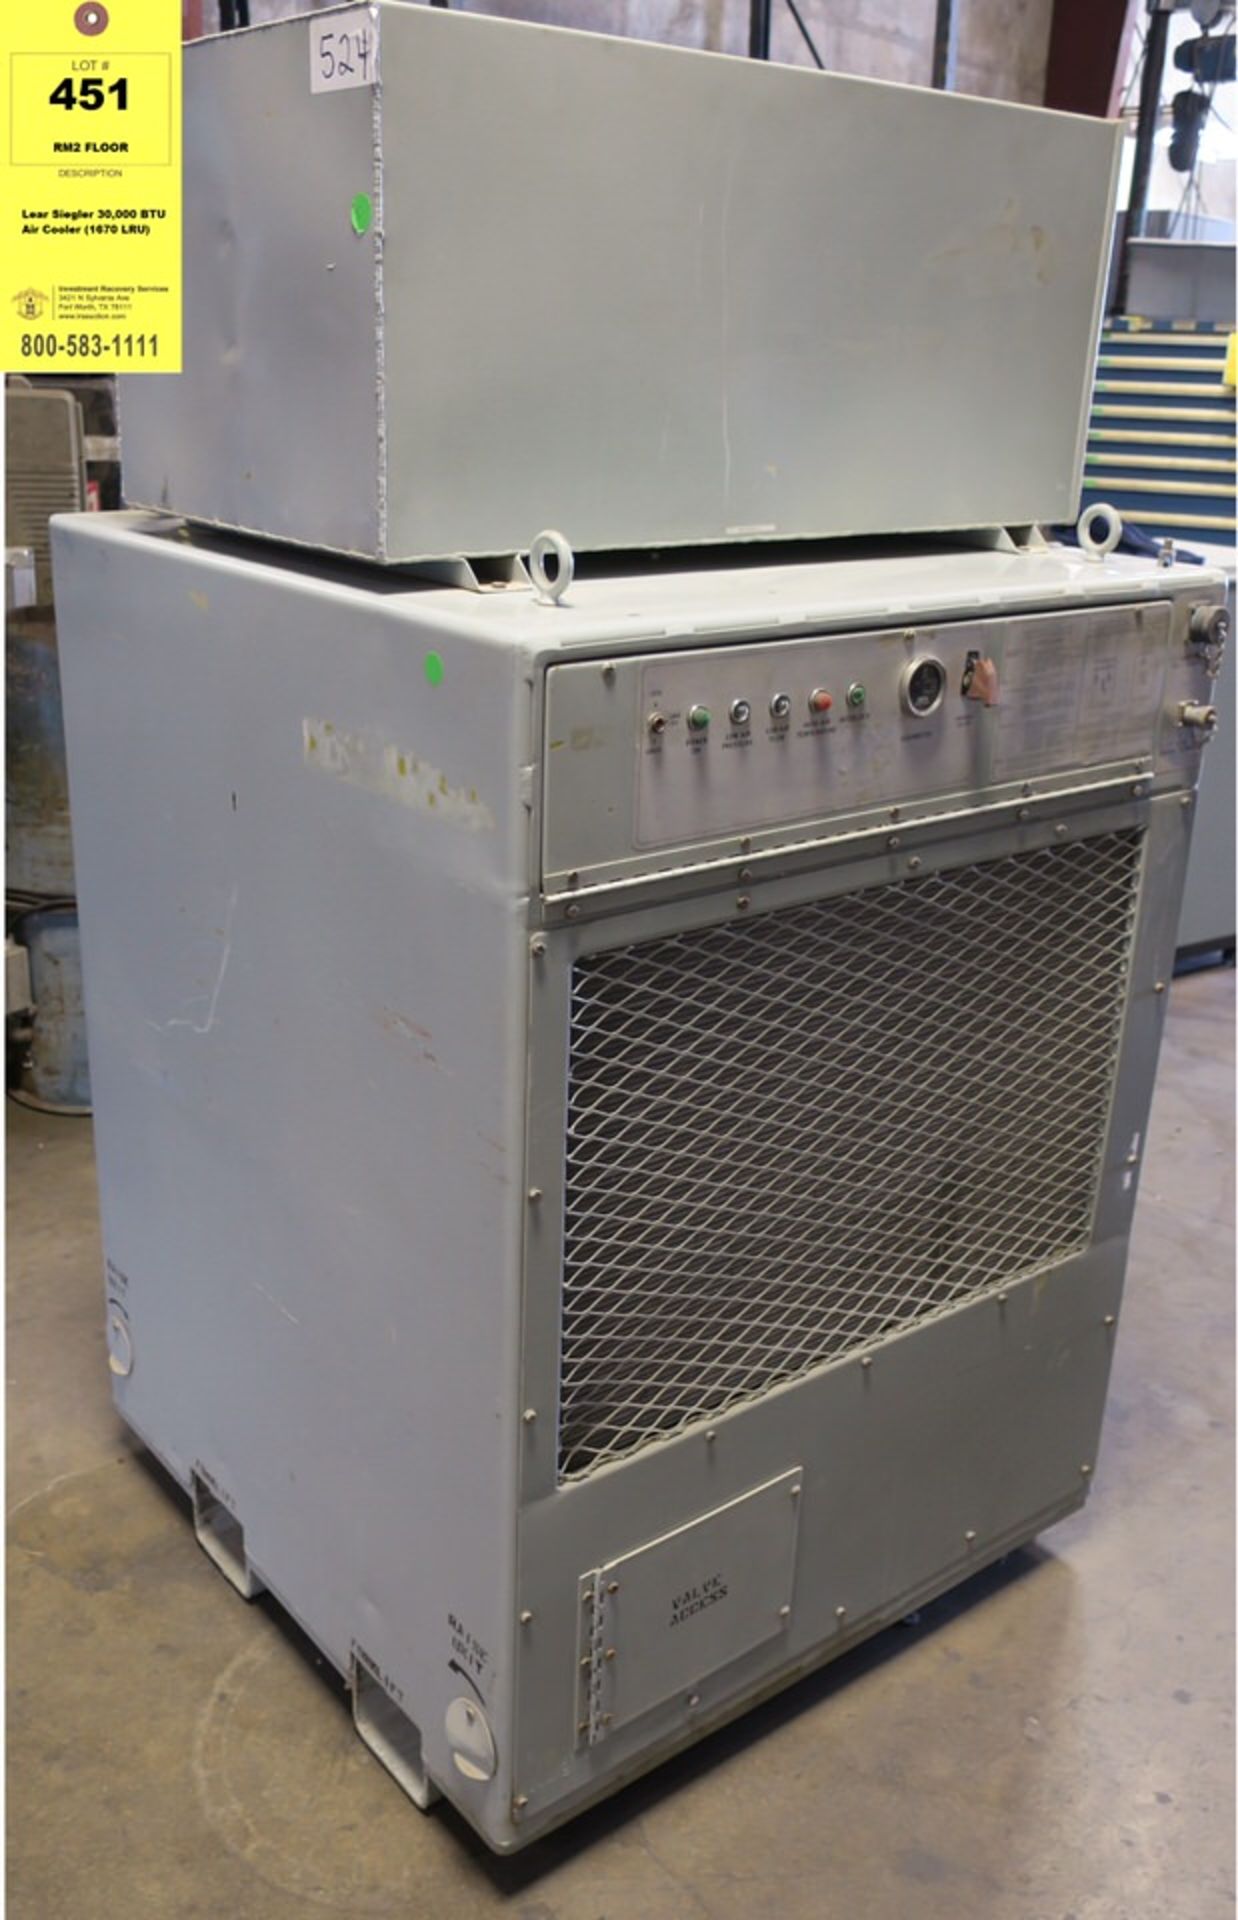 Lear Siegler 30,000 BTU Air Cooler (1670 LRU)